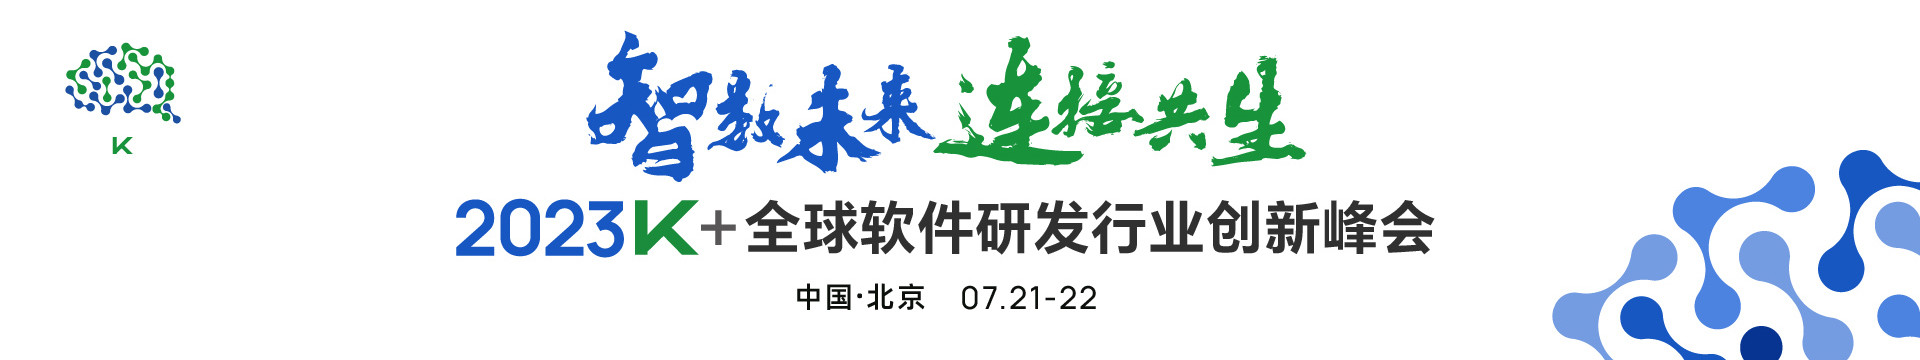 2023K+全球软件研发行业创新峰会·北京站